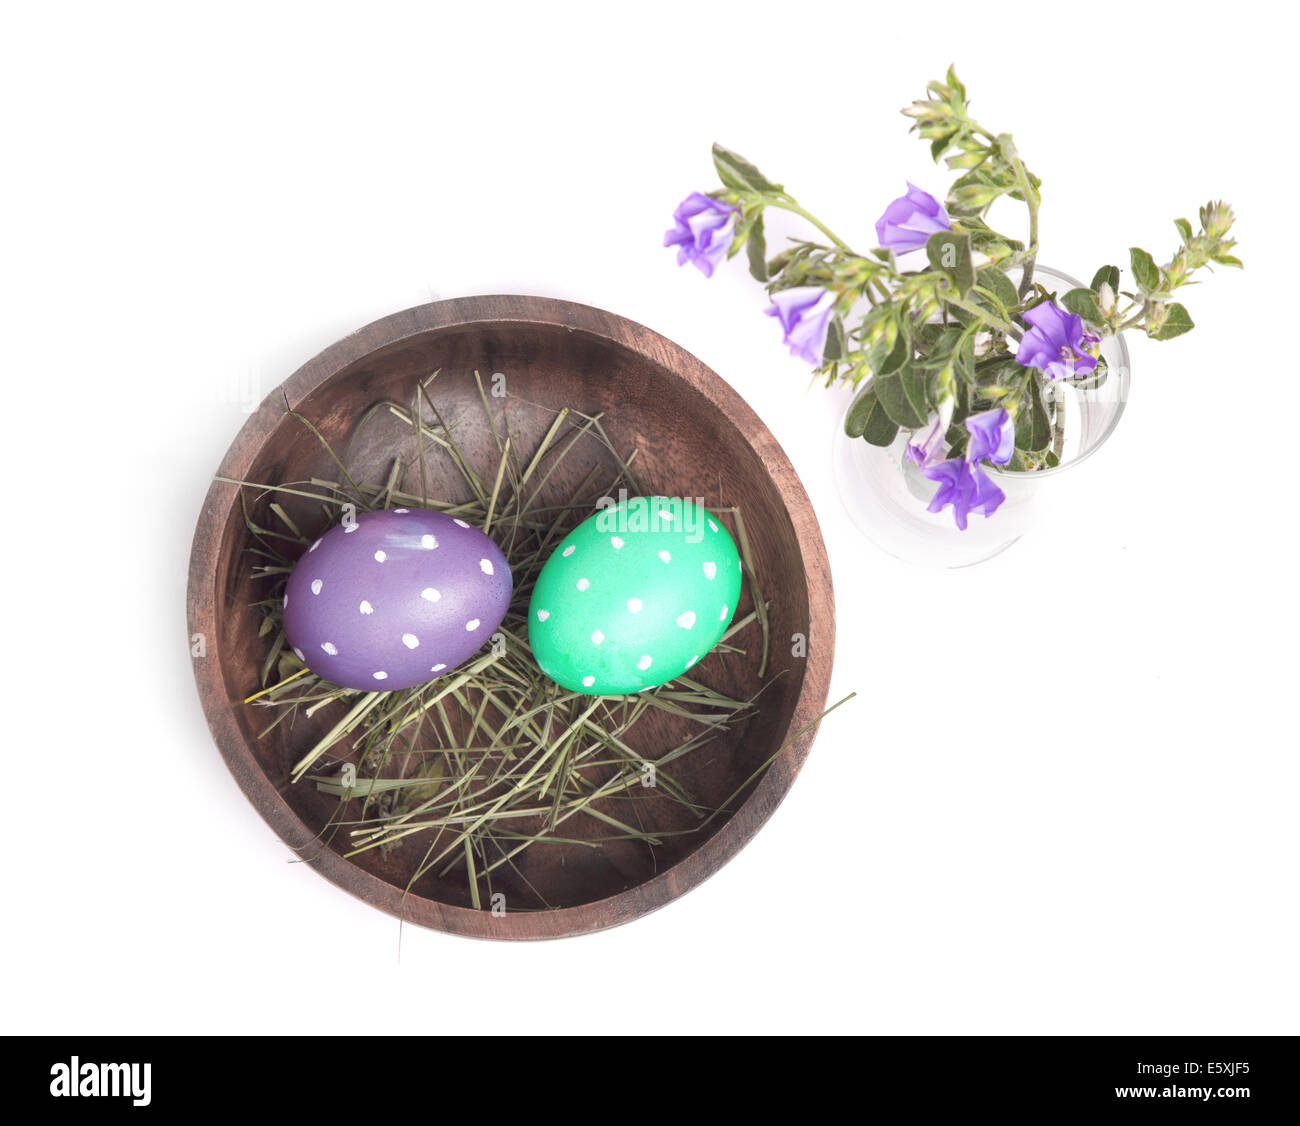 Los huevos de Pascua en un recipiente de madera y flores sobre fondo blanco. Foto de stock